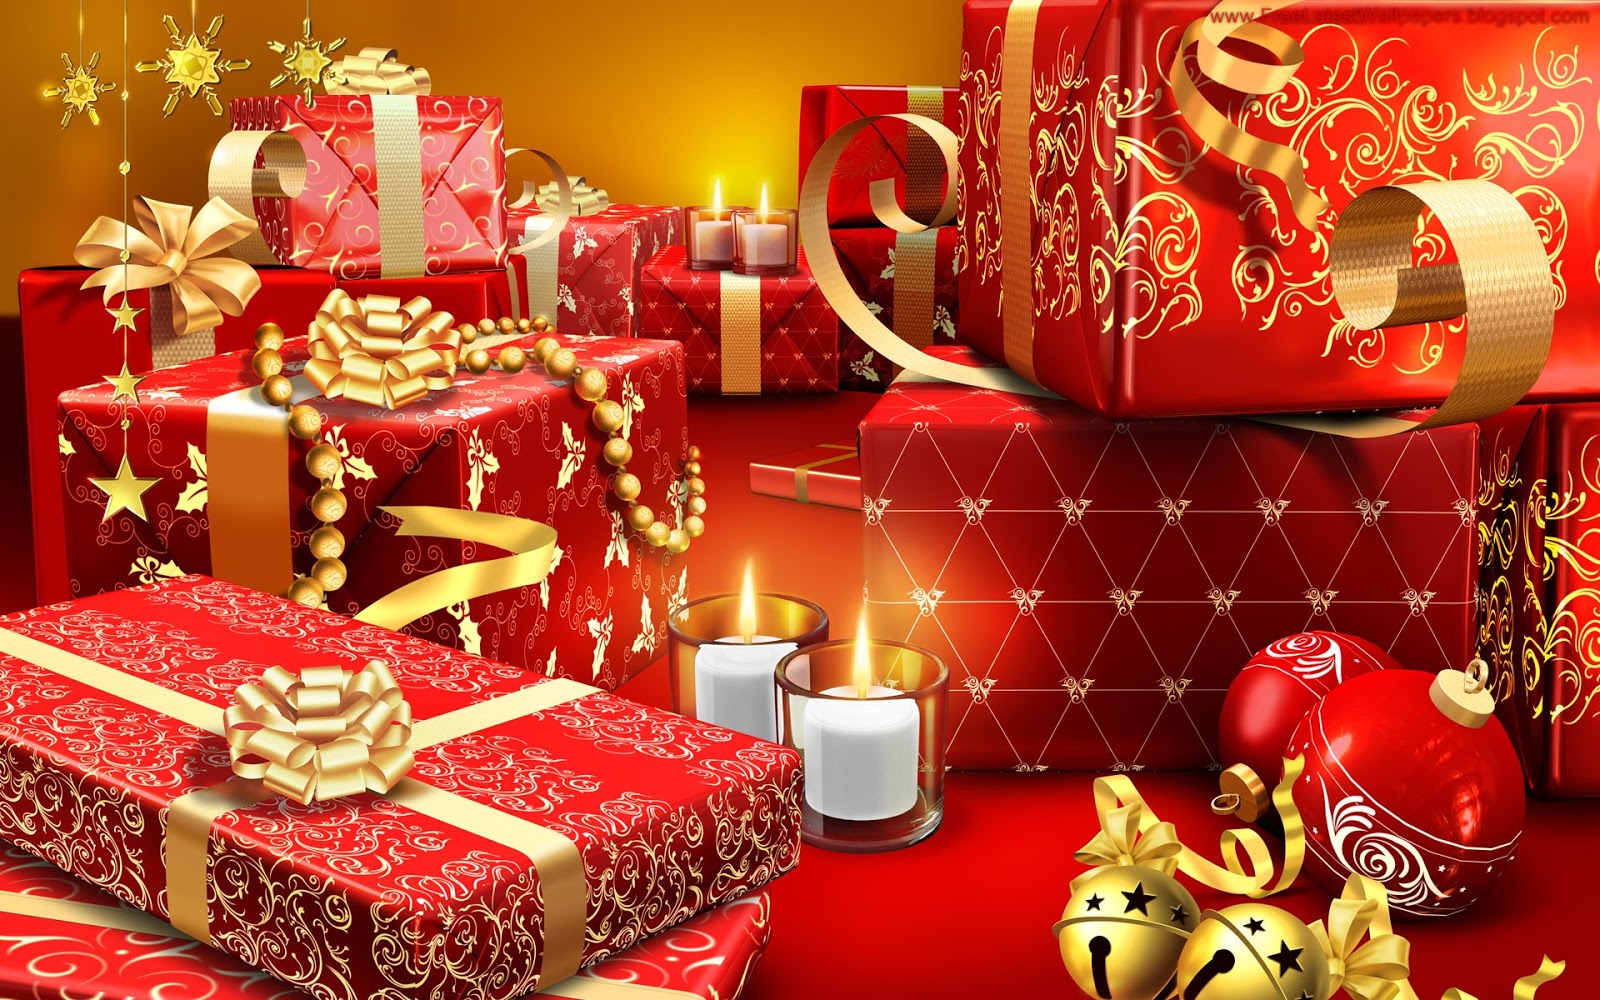 http://4.bp.blogspot.com/-psmmkq_sTPs/UM6bTV6LhVI/AAAAAAAACB8/XHwe6wKL48E/s1600/Christmas-HD-Wallpapers-6.jpg